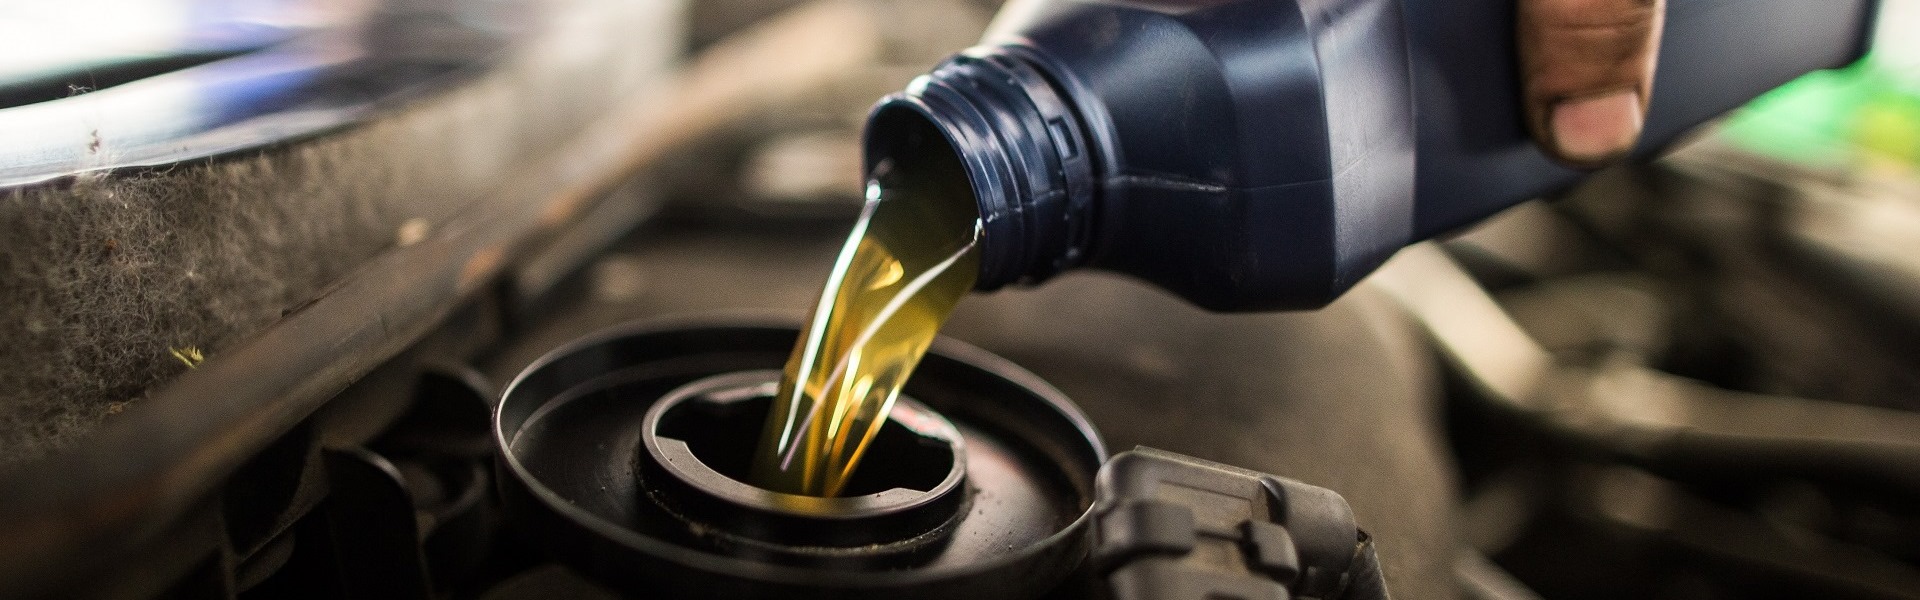 Вчасна заміна моторної оливи продовжить життя двигуна в твоєму авто